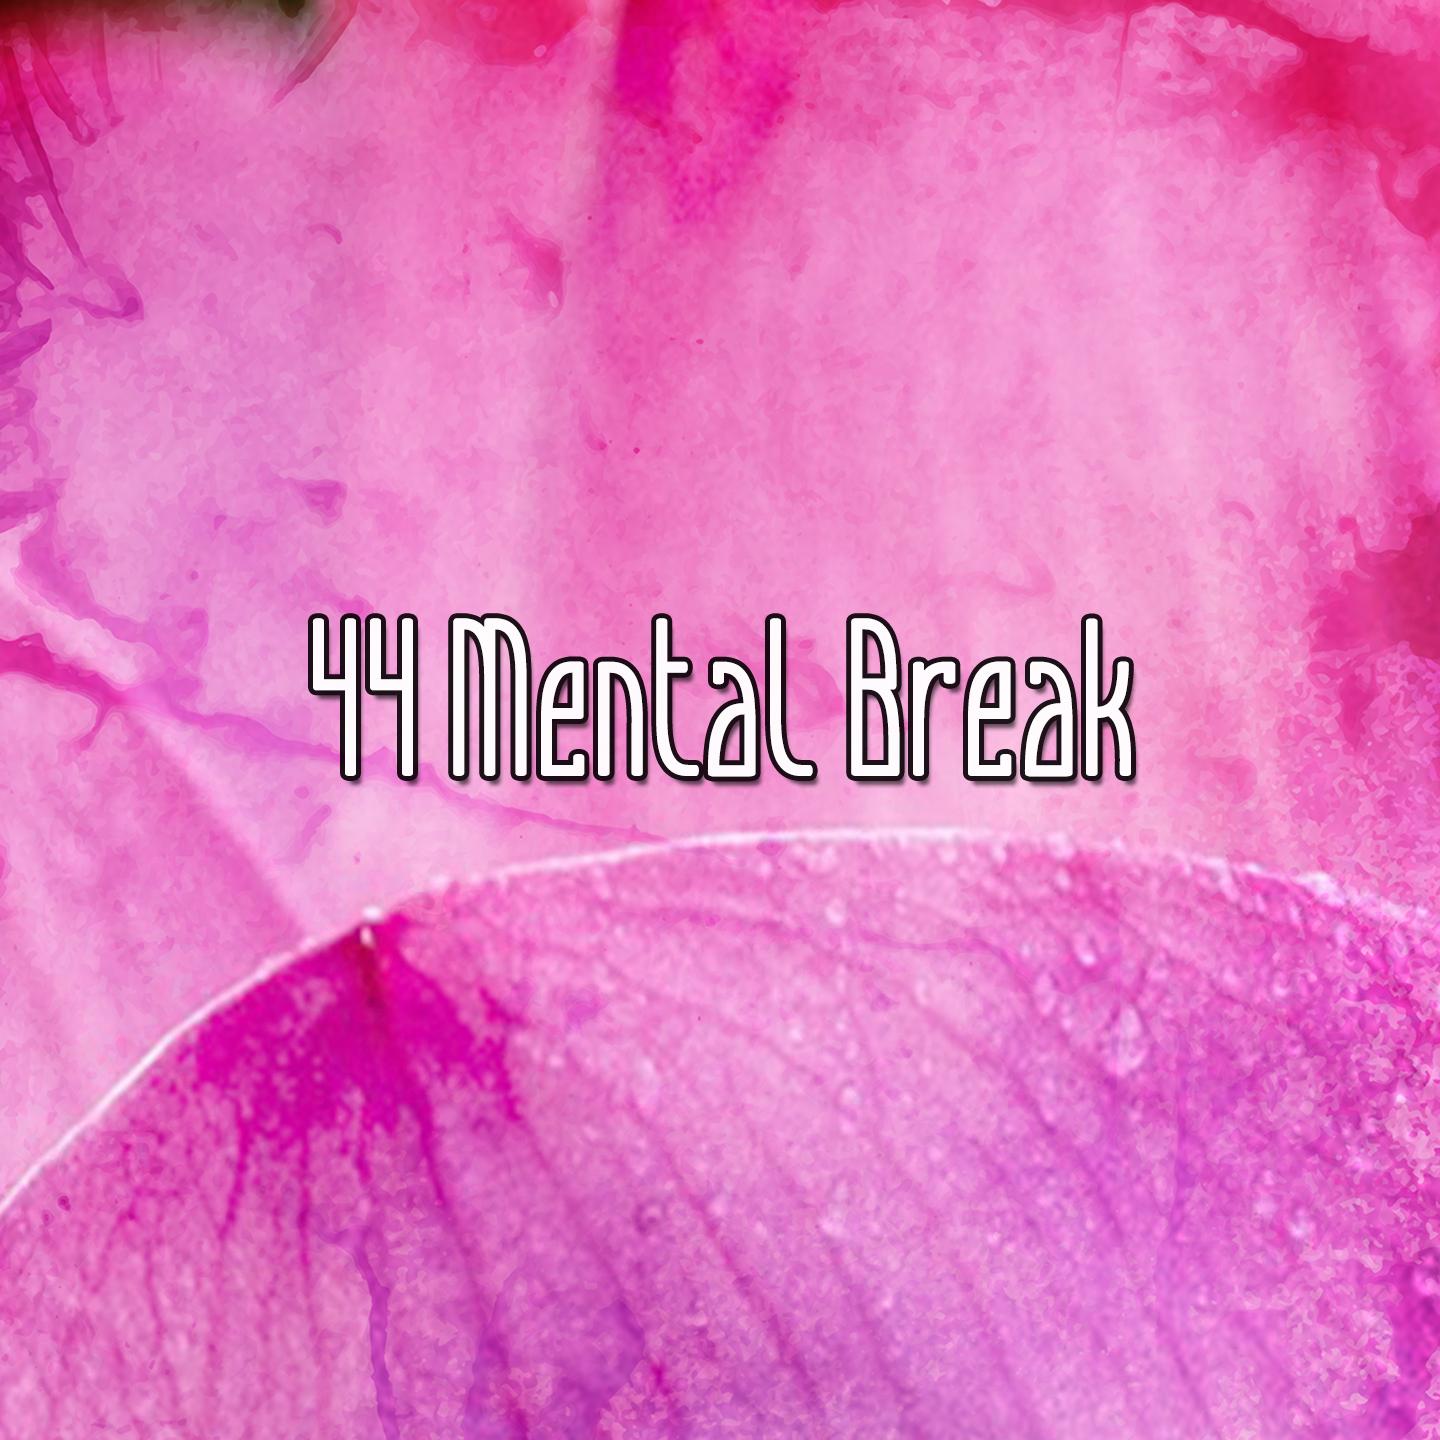 44 Mental Break